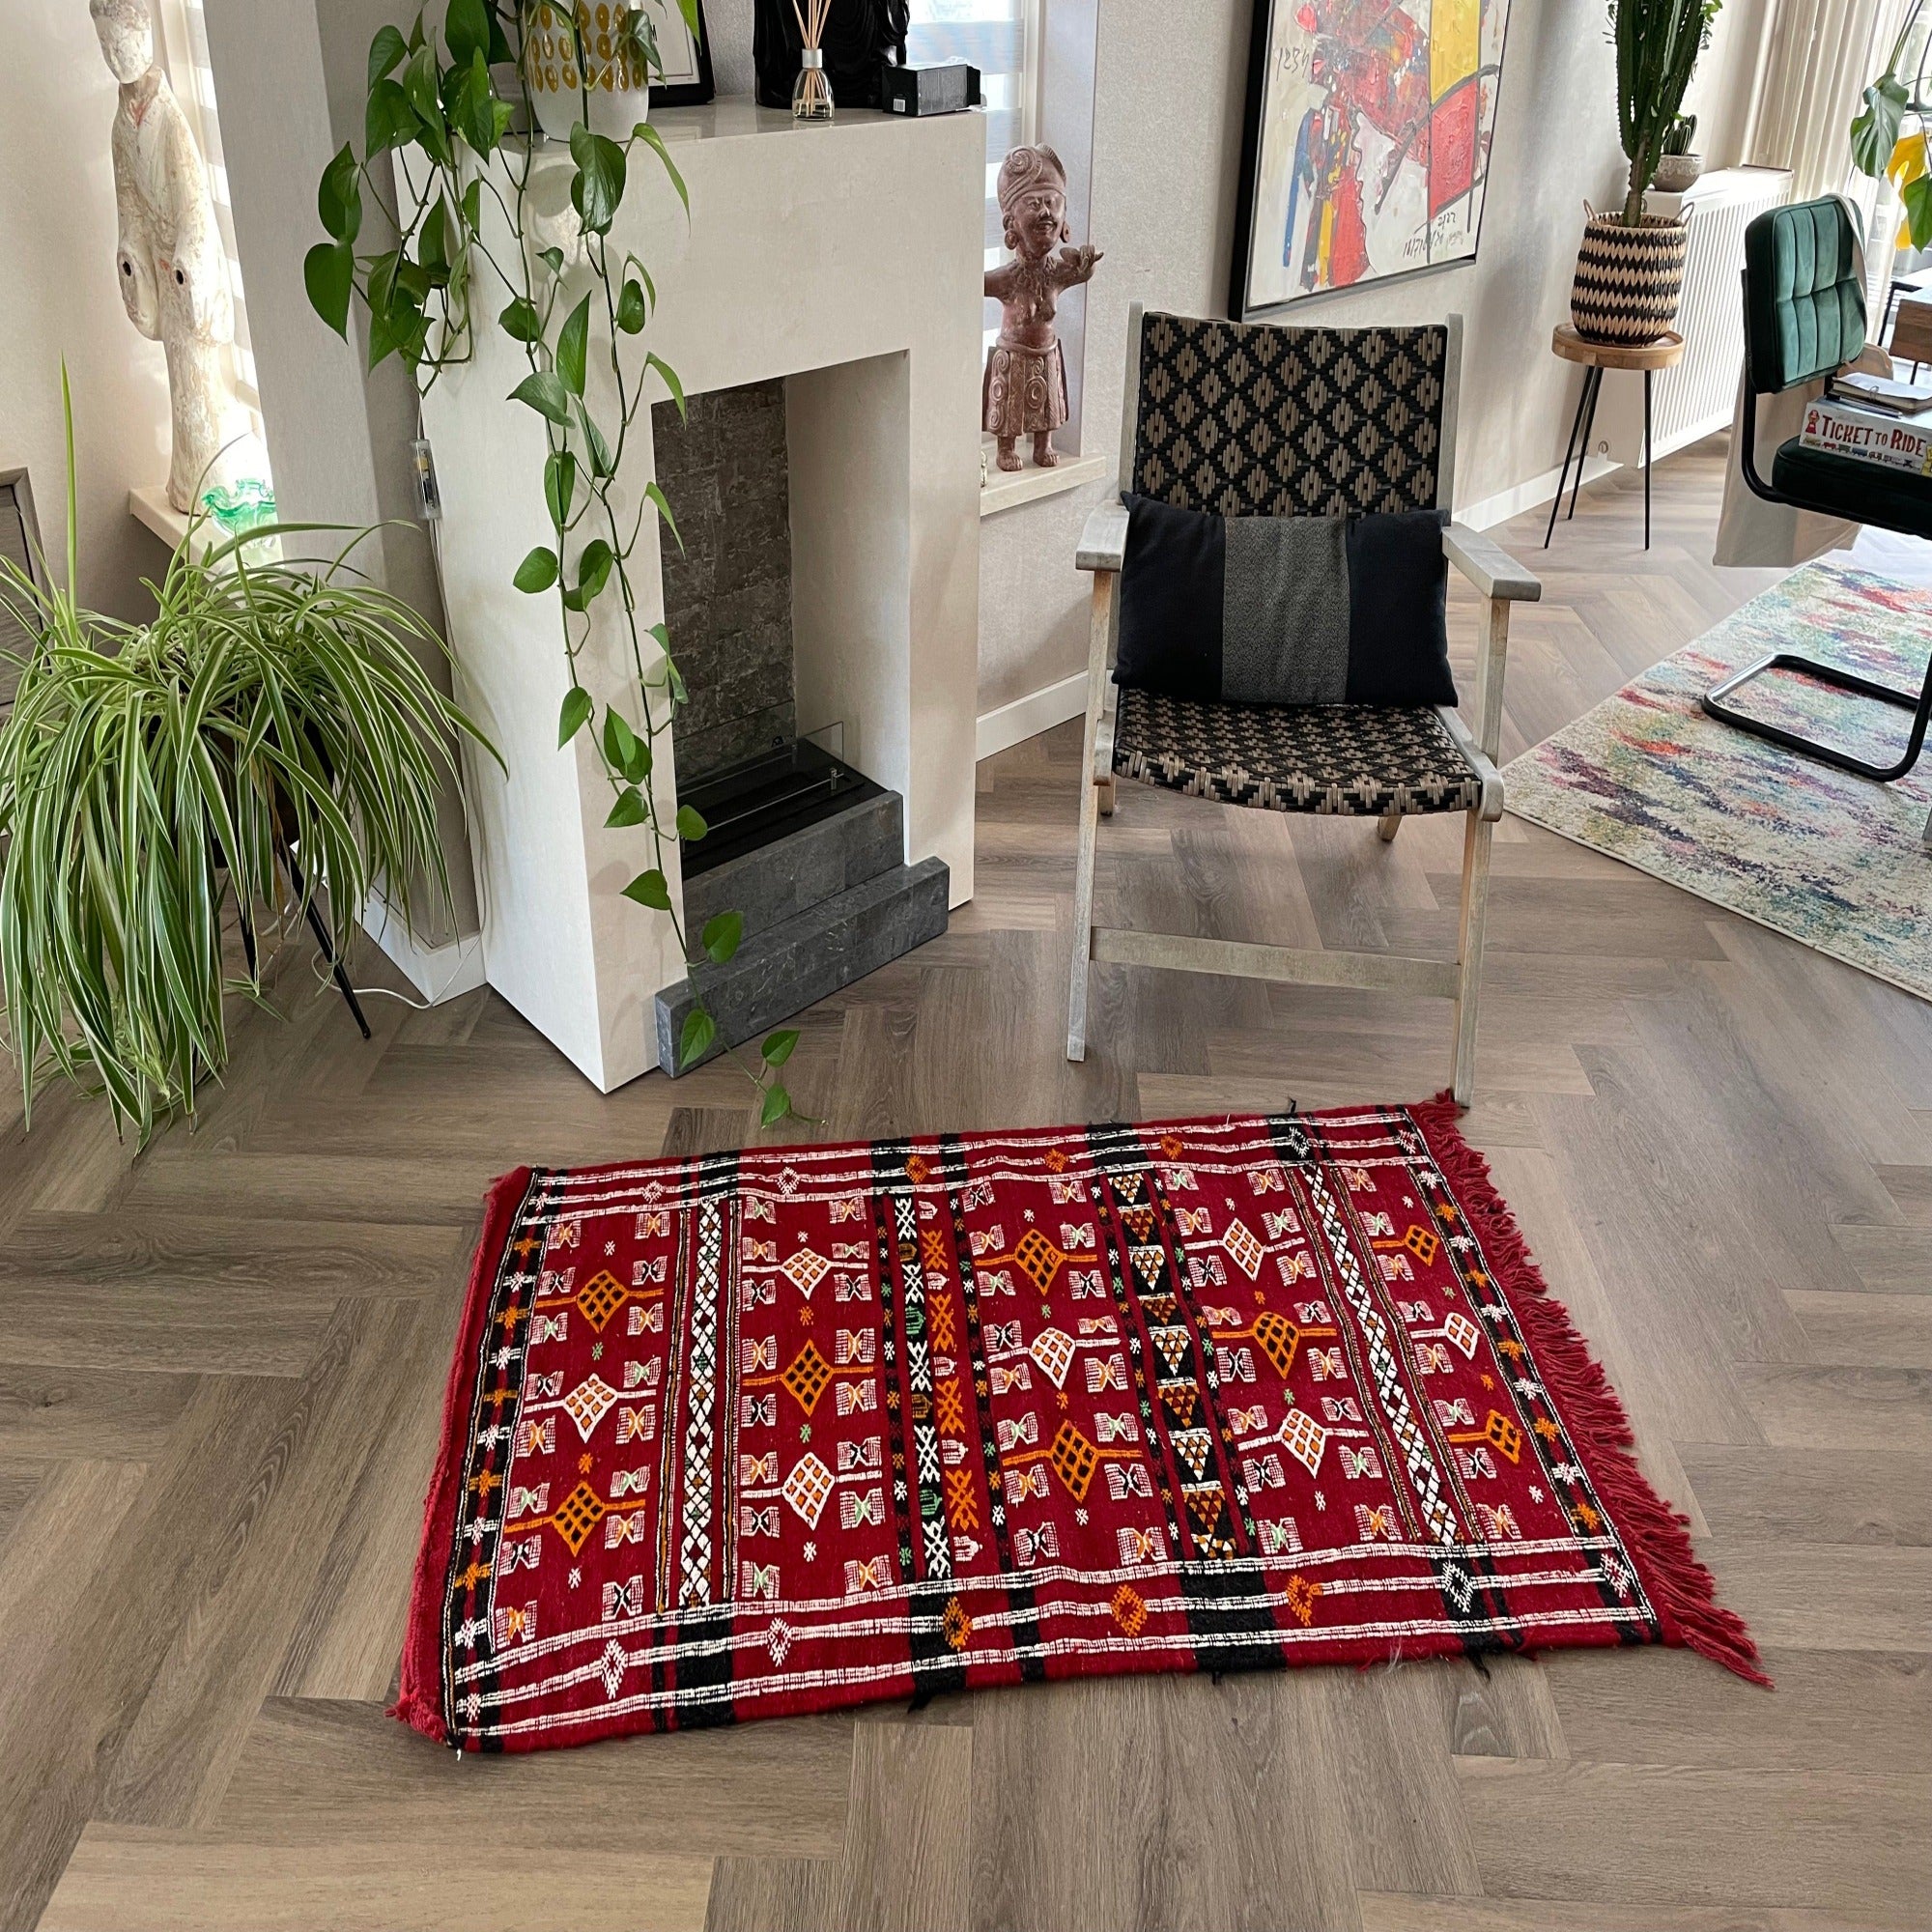 Handwoven Berber rug